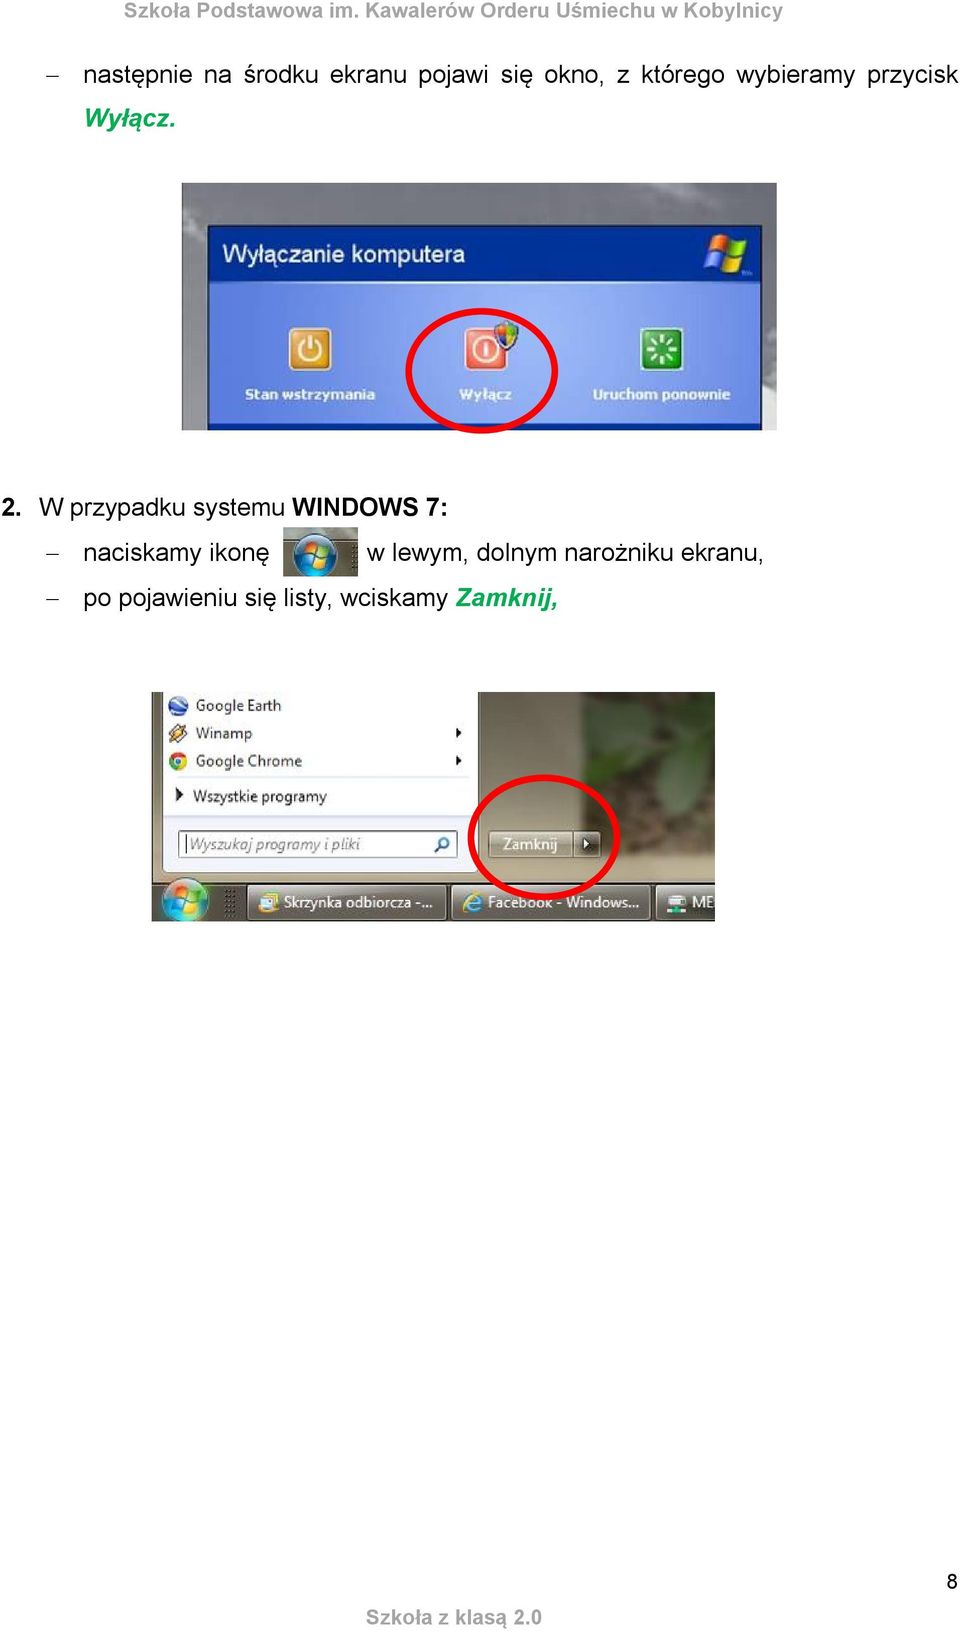 W przypadku systemu WINDOWS 7: naciskamy ikonę w